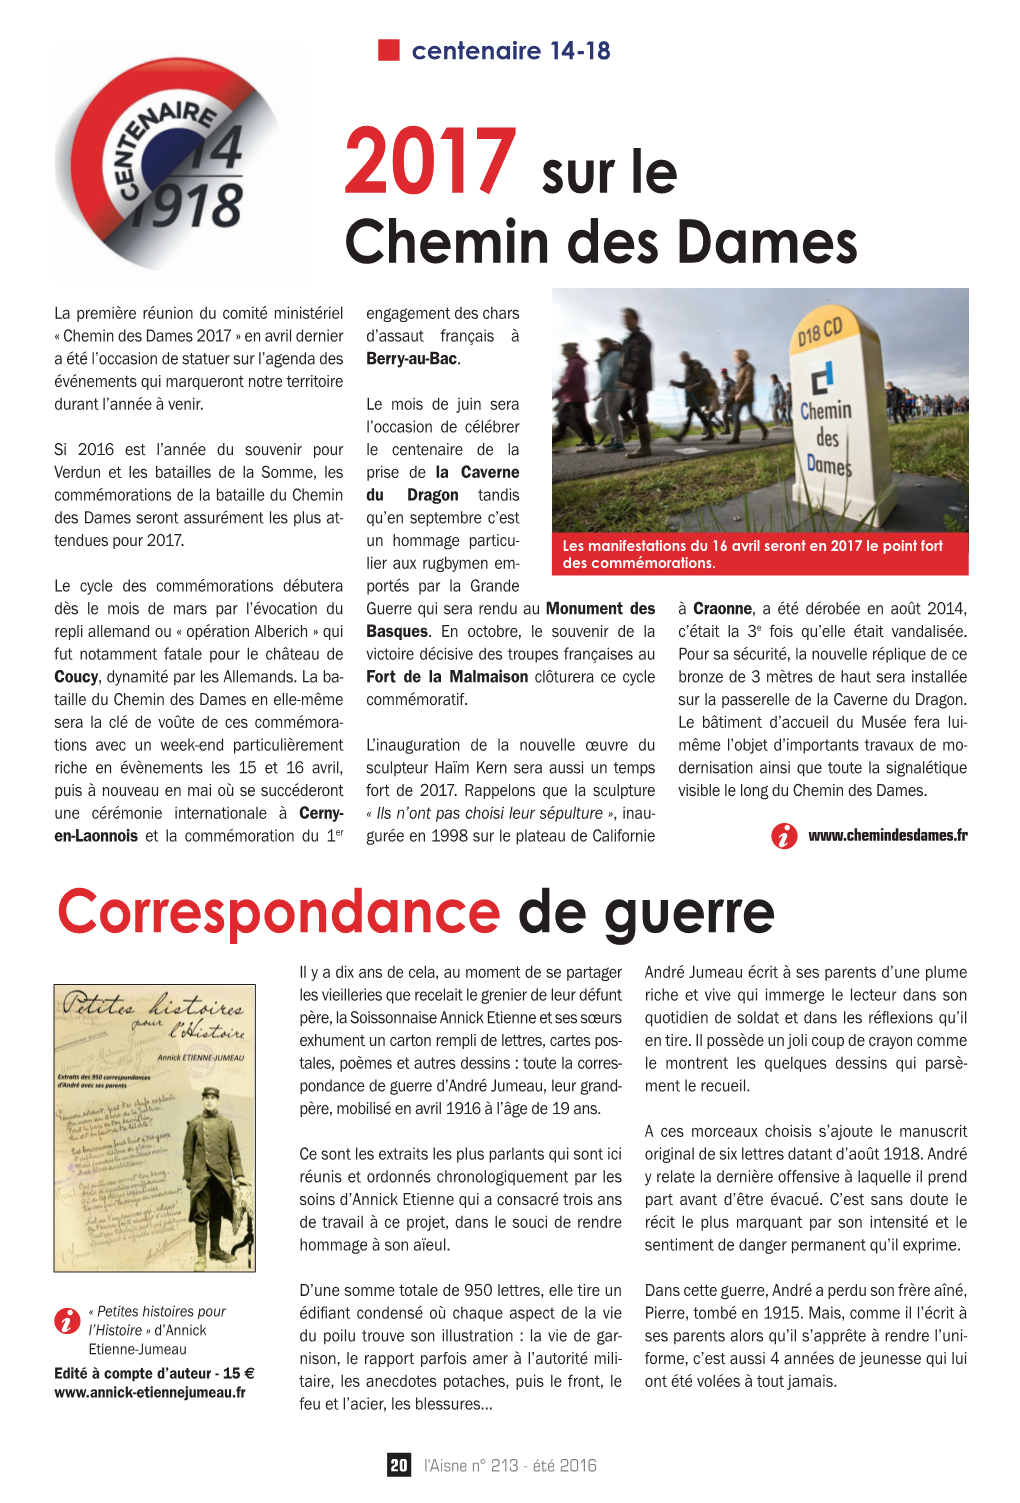 2017 Sur Le Chemin Des Dames Correspondance De Guerre